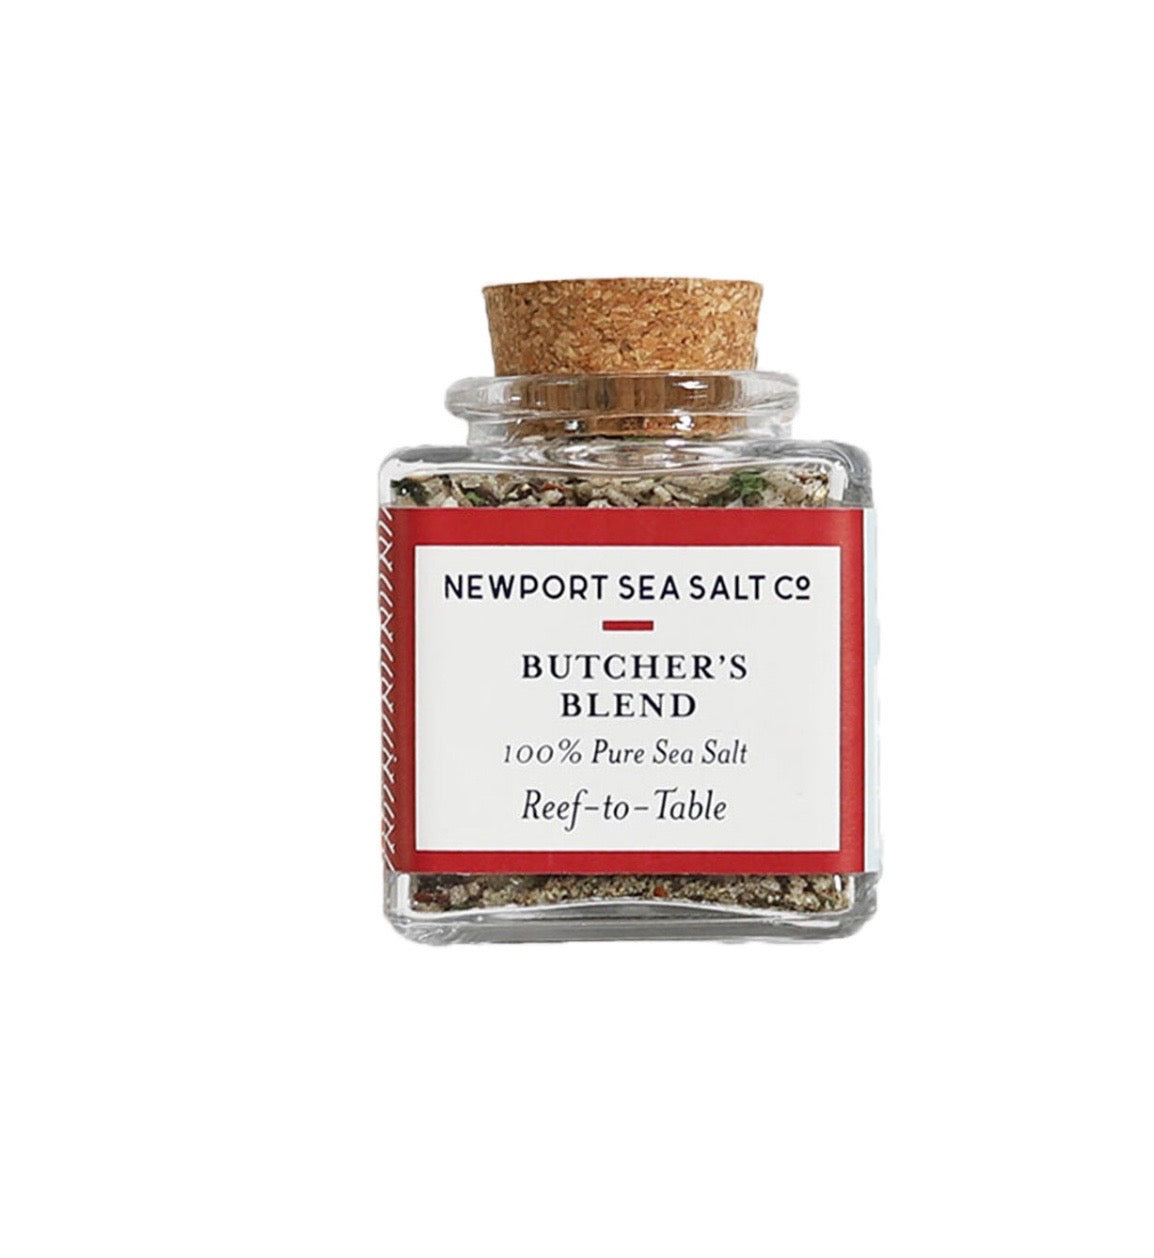 100% Original Newport Sea Salt